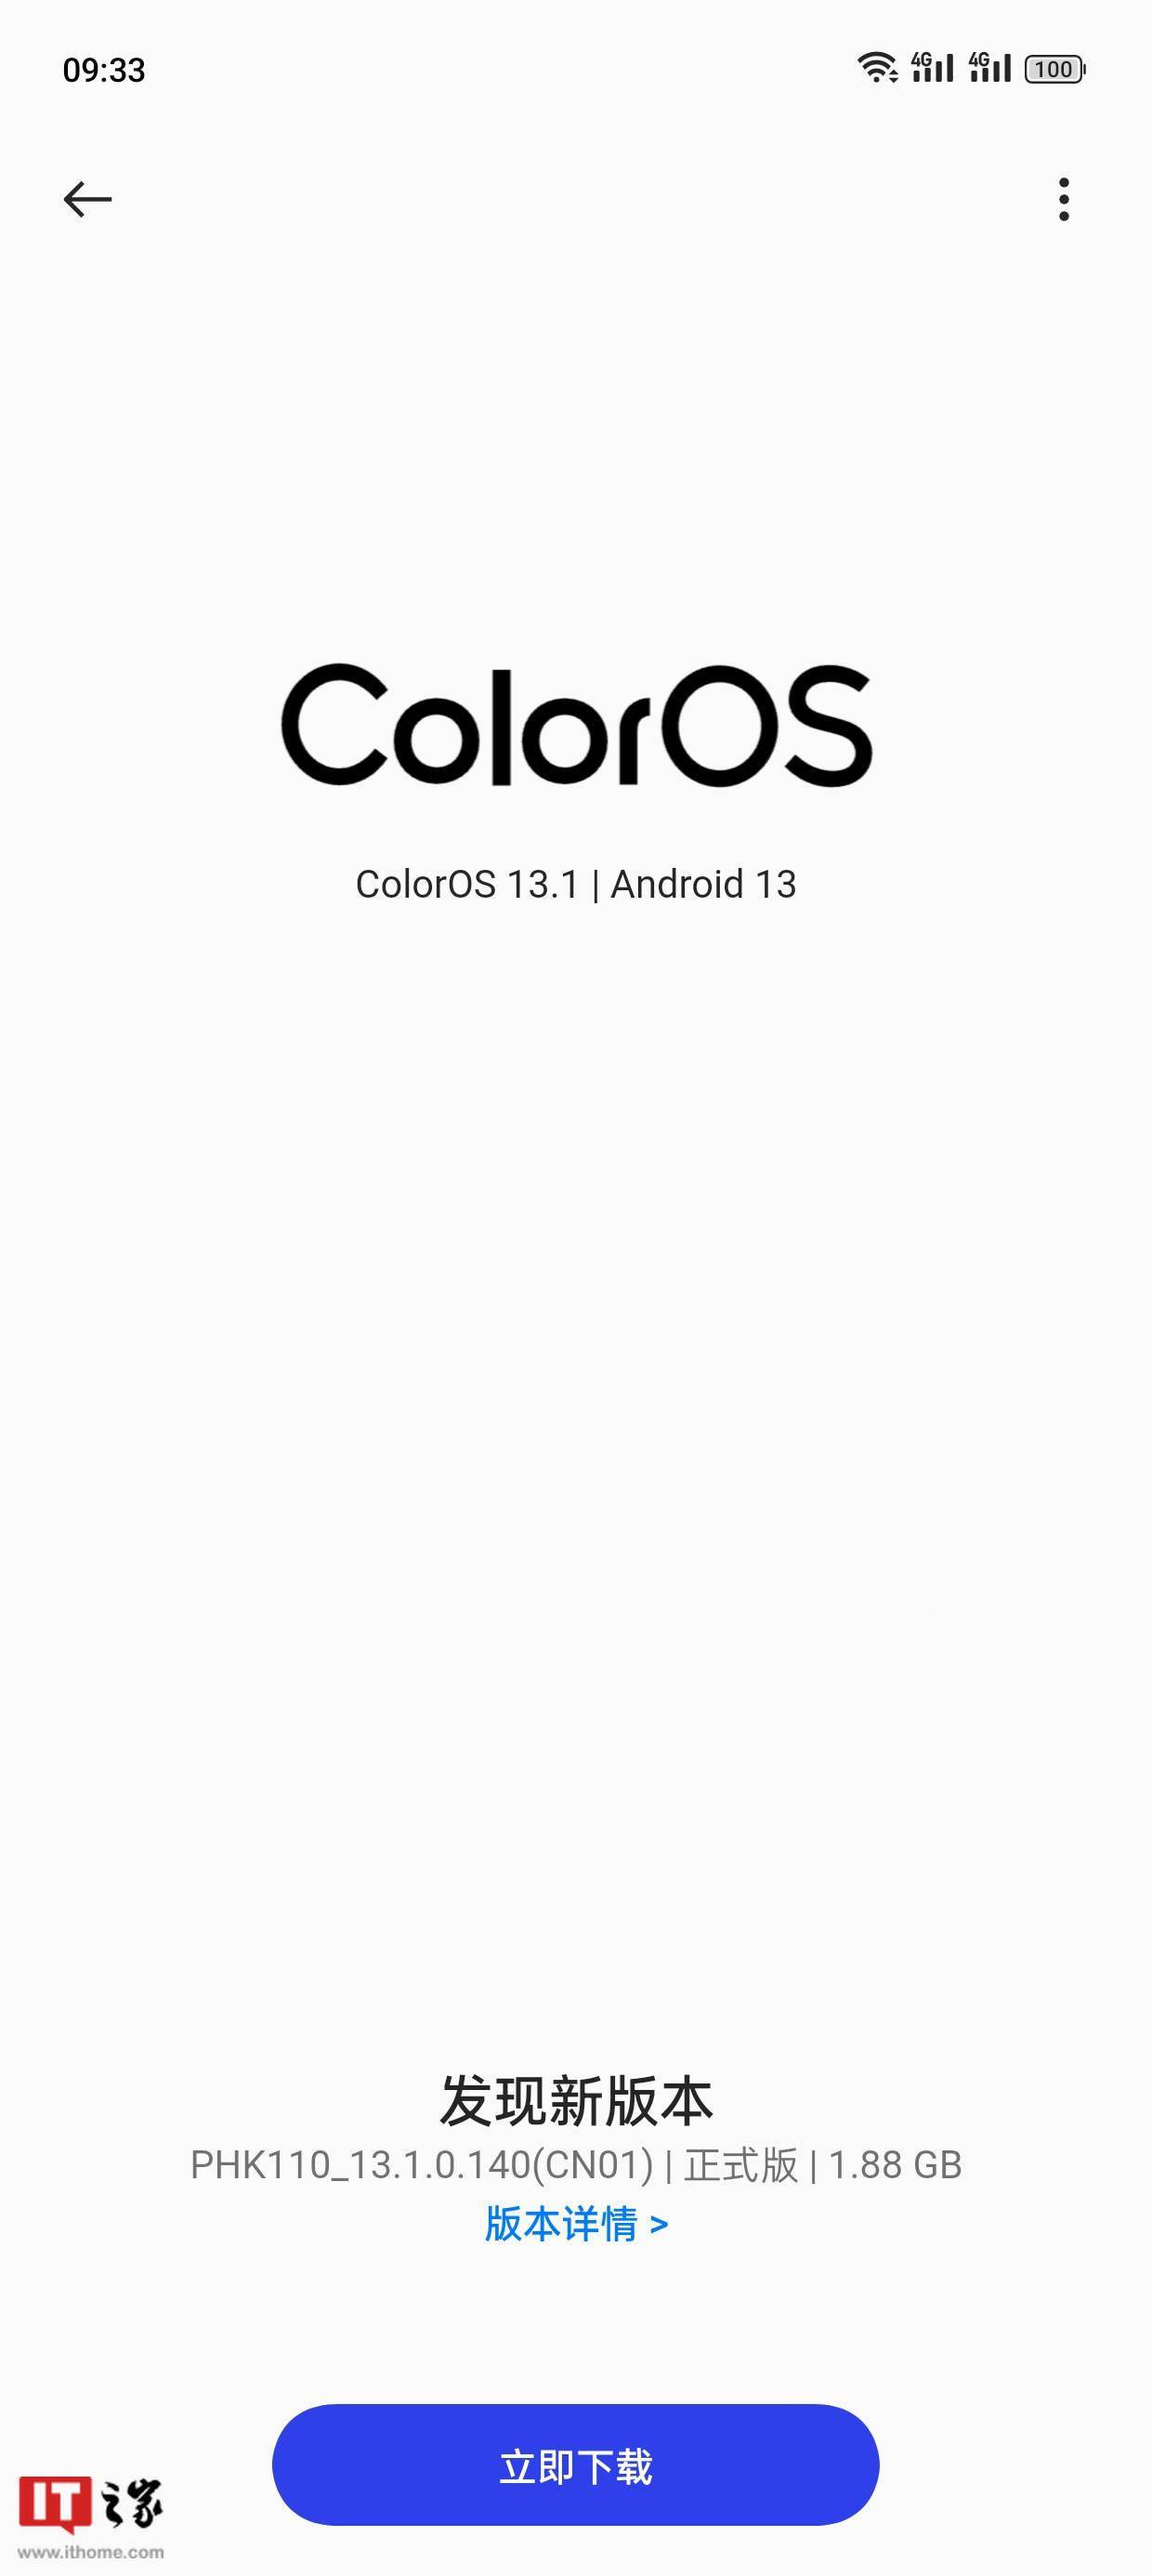 晋江文学城手机版:一加Ace 2手机开始推送安卓13/ColorOS 13.1正式版